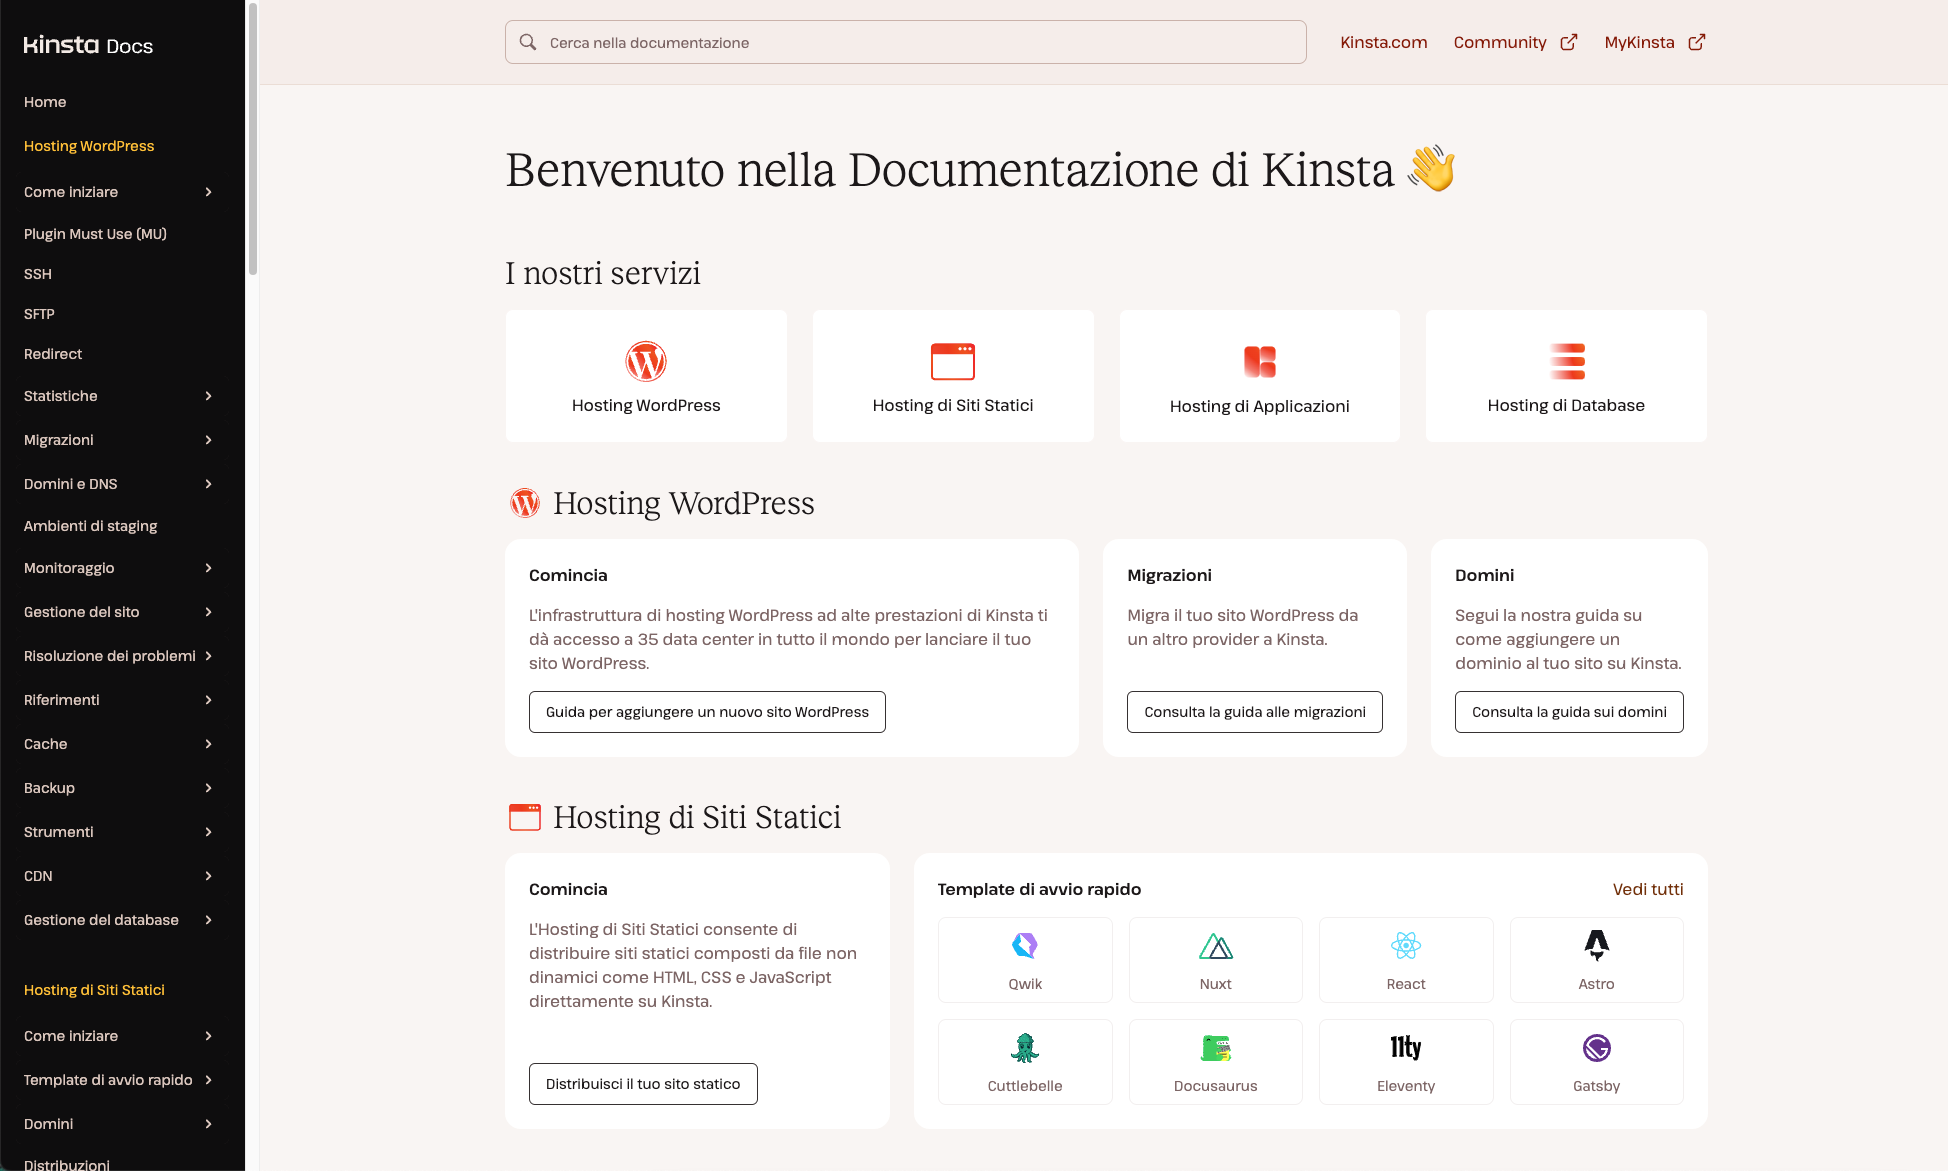 Consultate la homepage della documentazione di Kinsta in italiano.